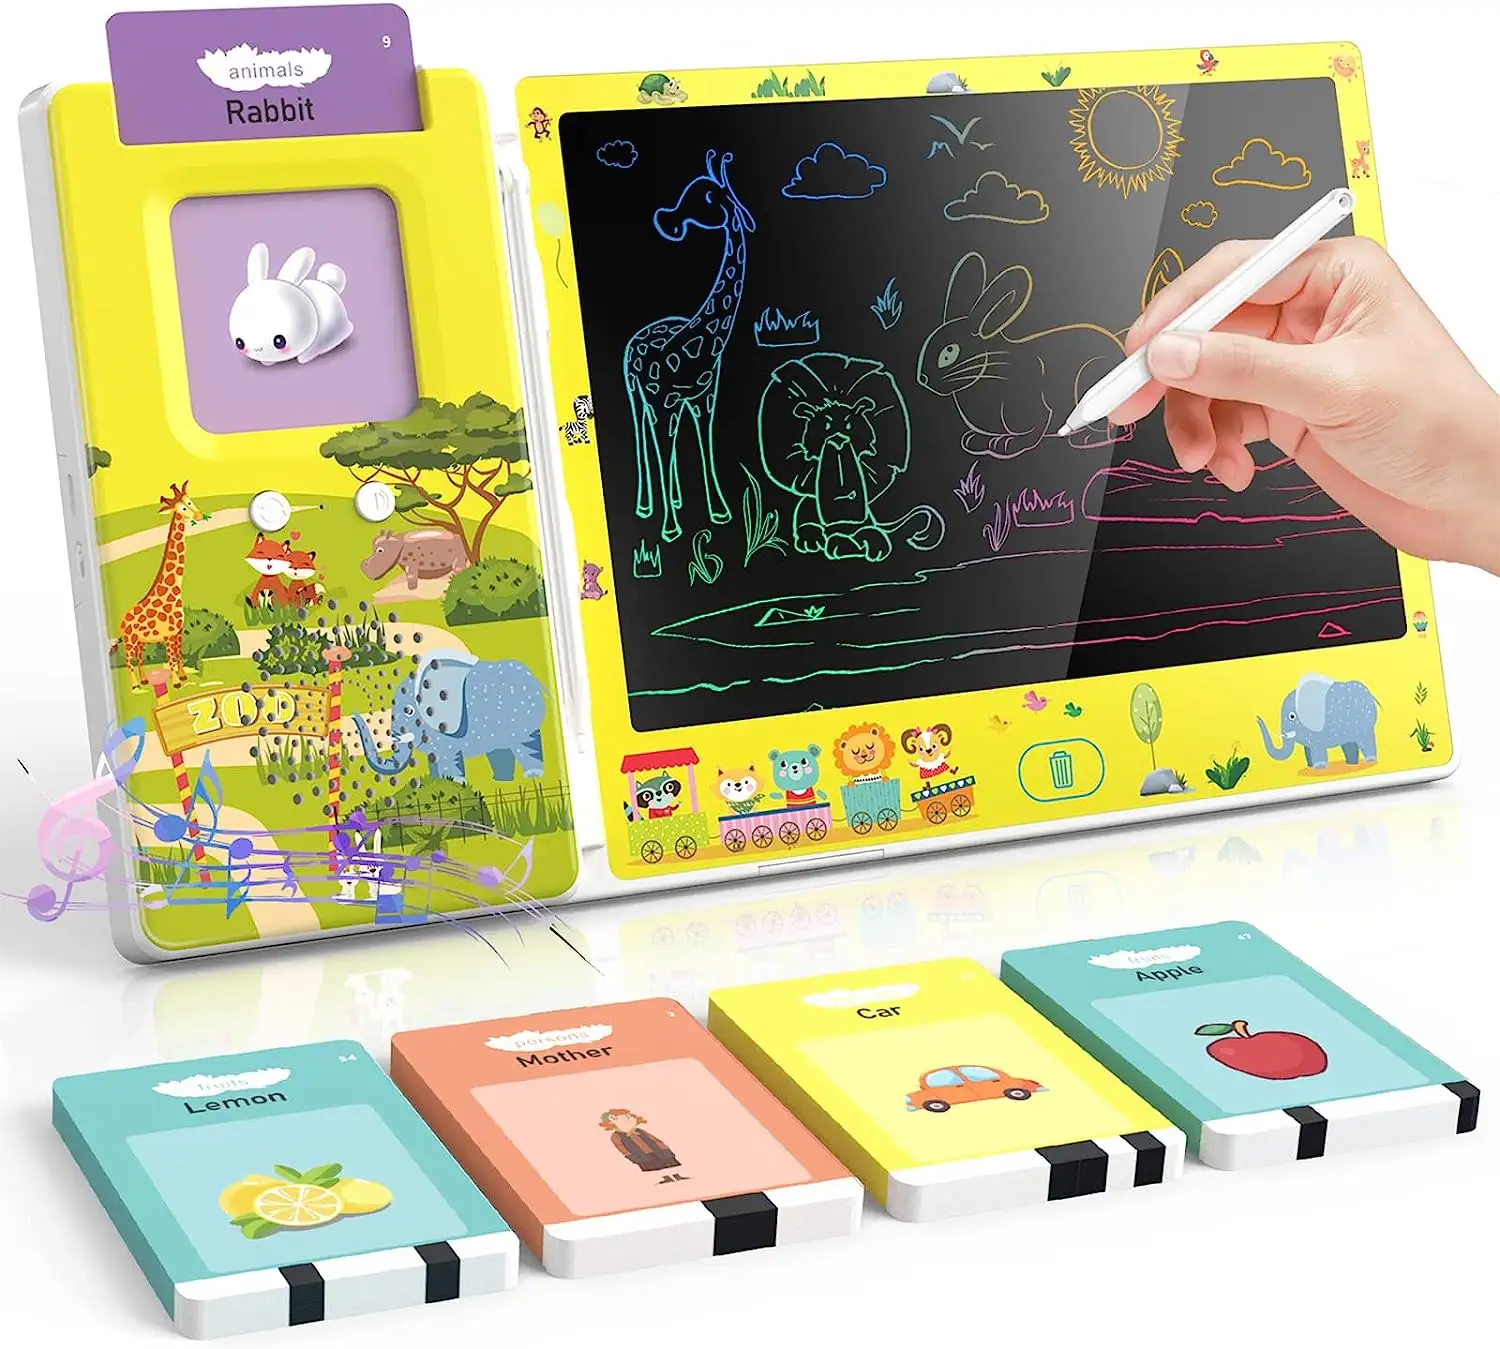 Mesin belajar bahasa Inggris, 2 in1 mainan mesin belajar bahasa Inggris 8.5 inci Tablet menulis LCD dengan 224 kata Penglihatan kartu Flash